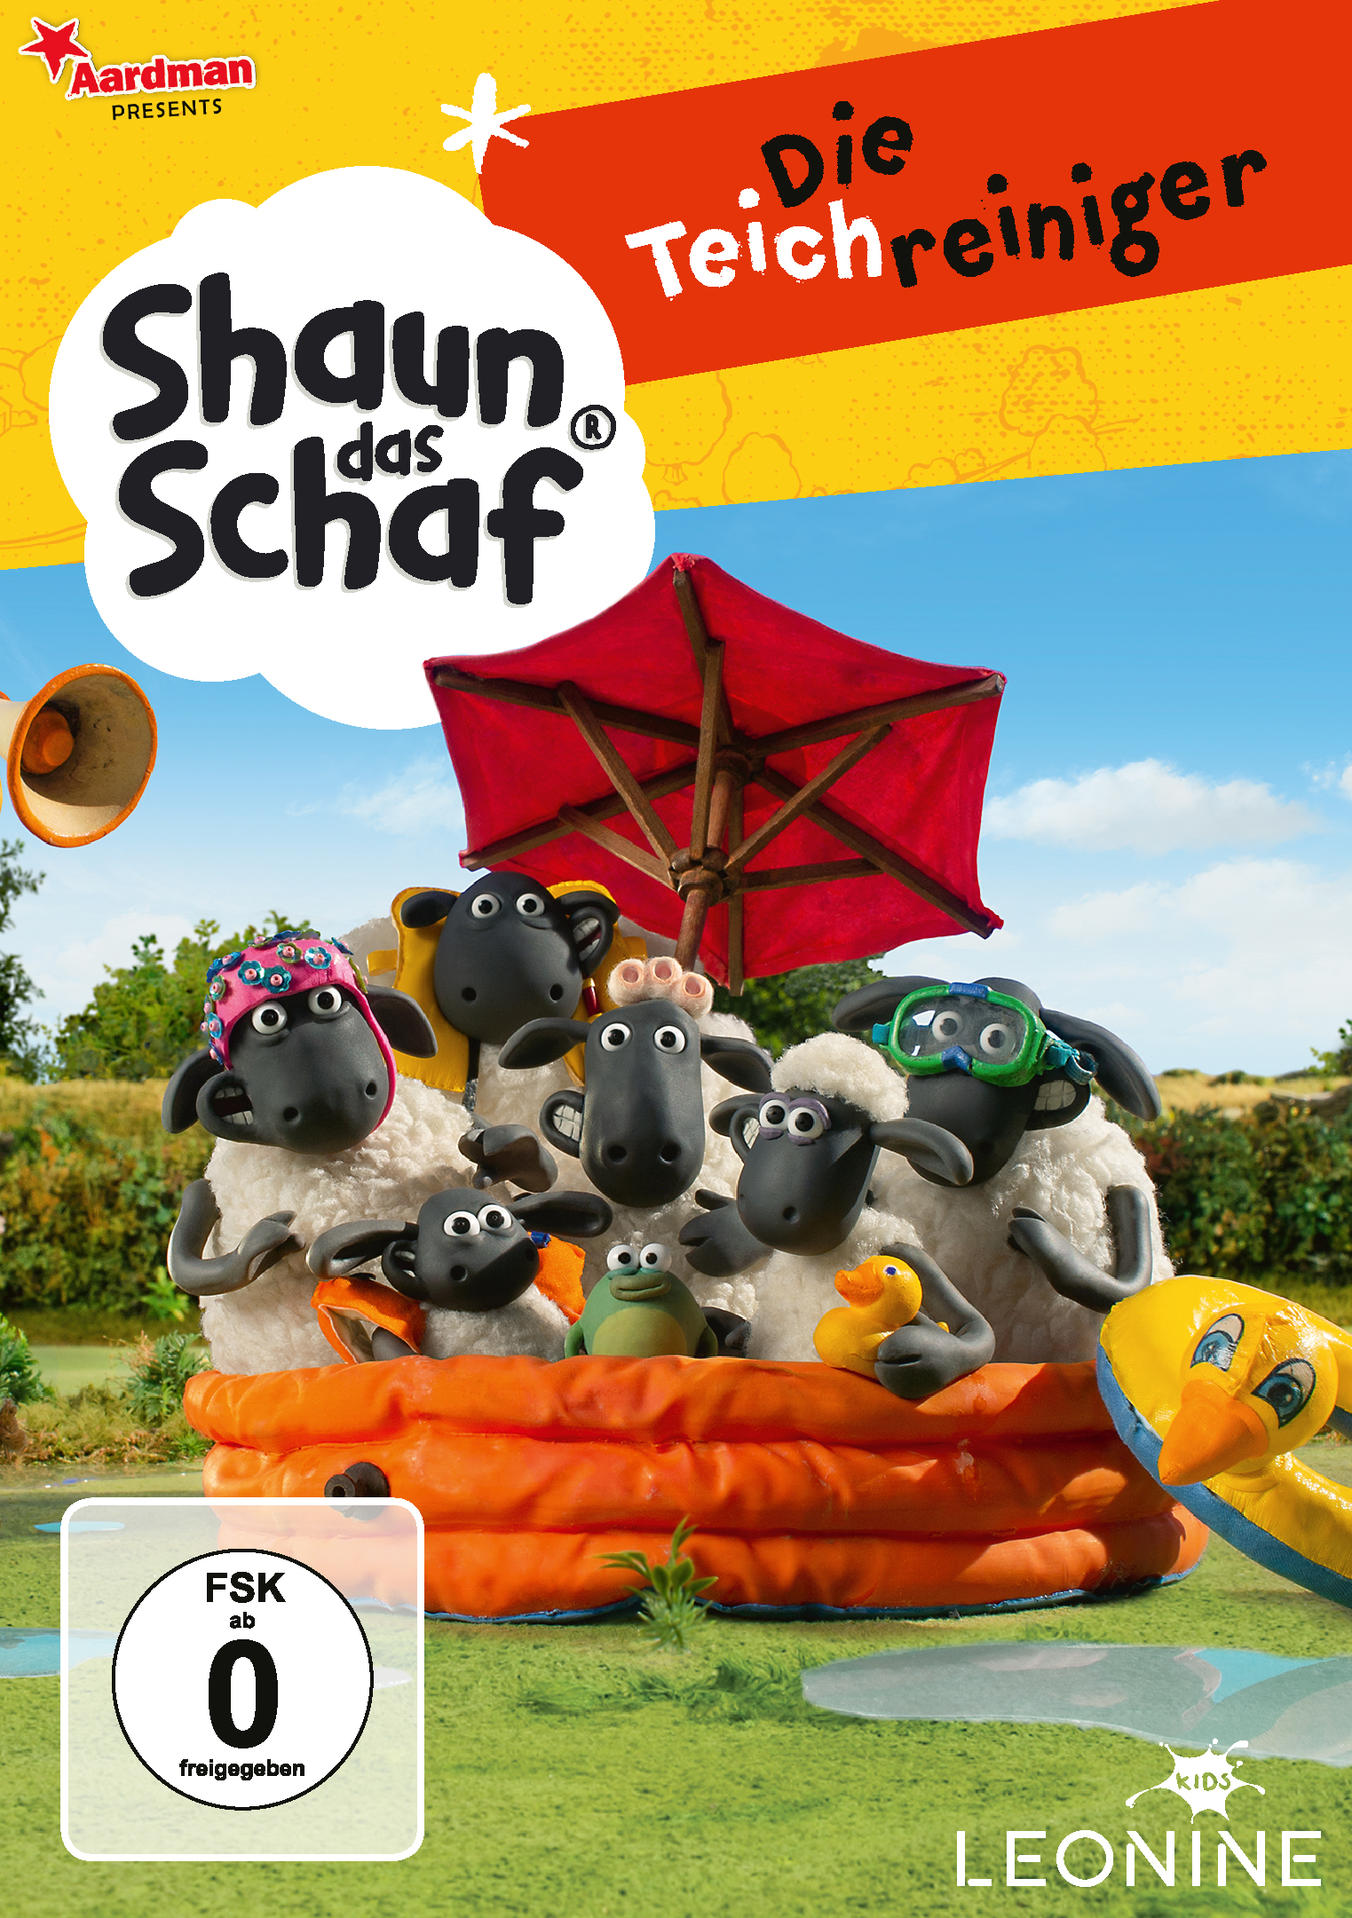 Schaf 6, Teichreiniger das DVD Vol. Die - Shaun (Staffel 1)